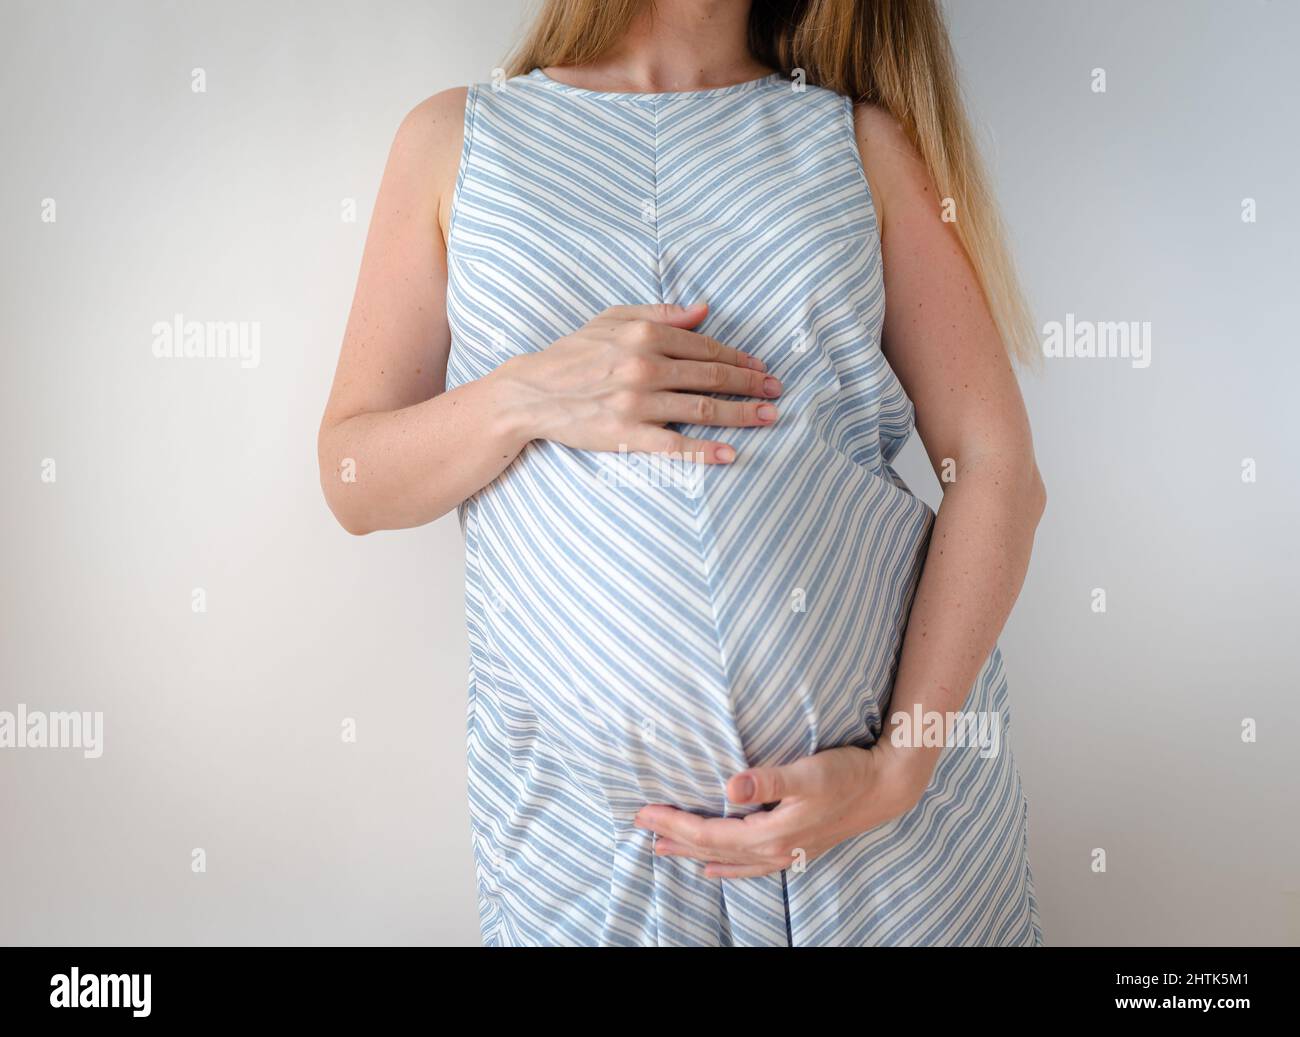 una mujer embarazada en un vestido azul con una raya blanca, se levanta sobre un fondo blanco y sostiene sus manos sobre su estómago, el concepto de esperar un Foto de stock